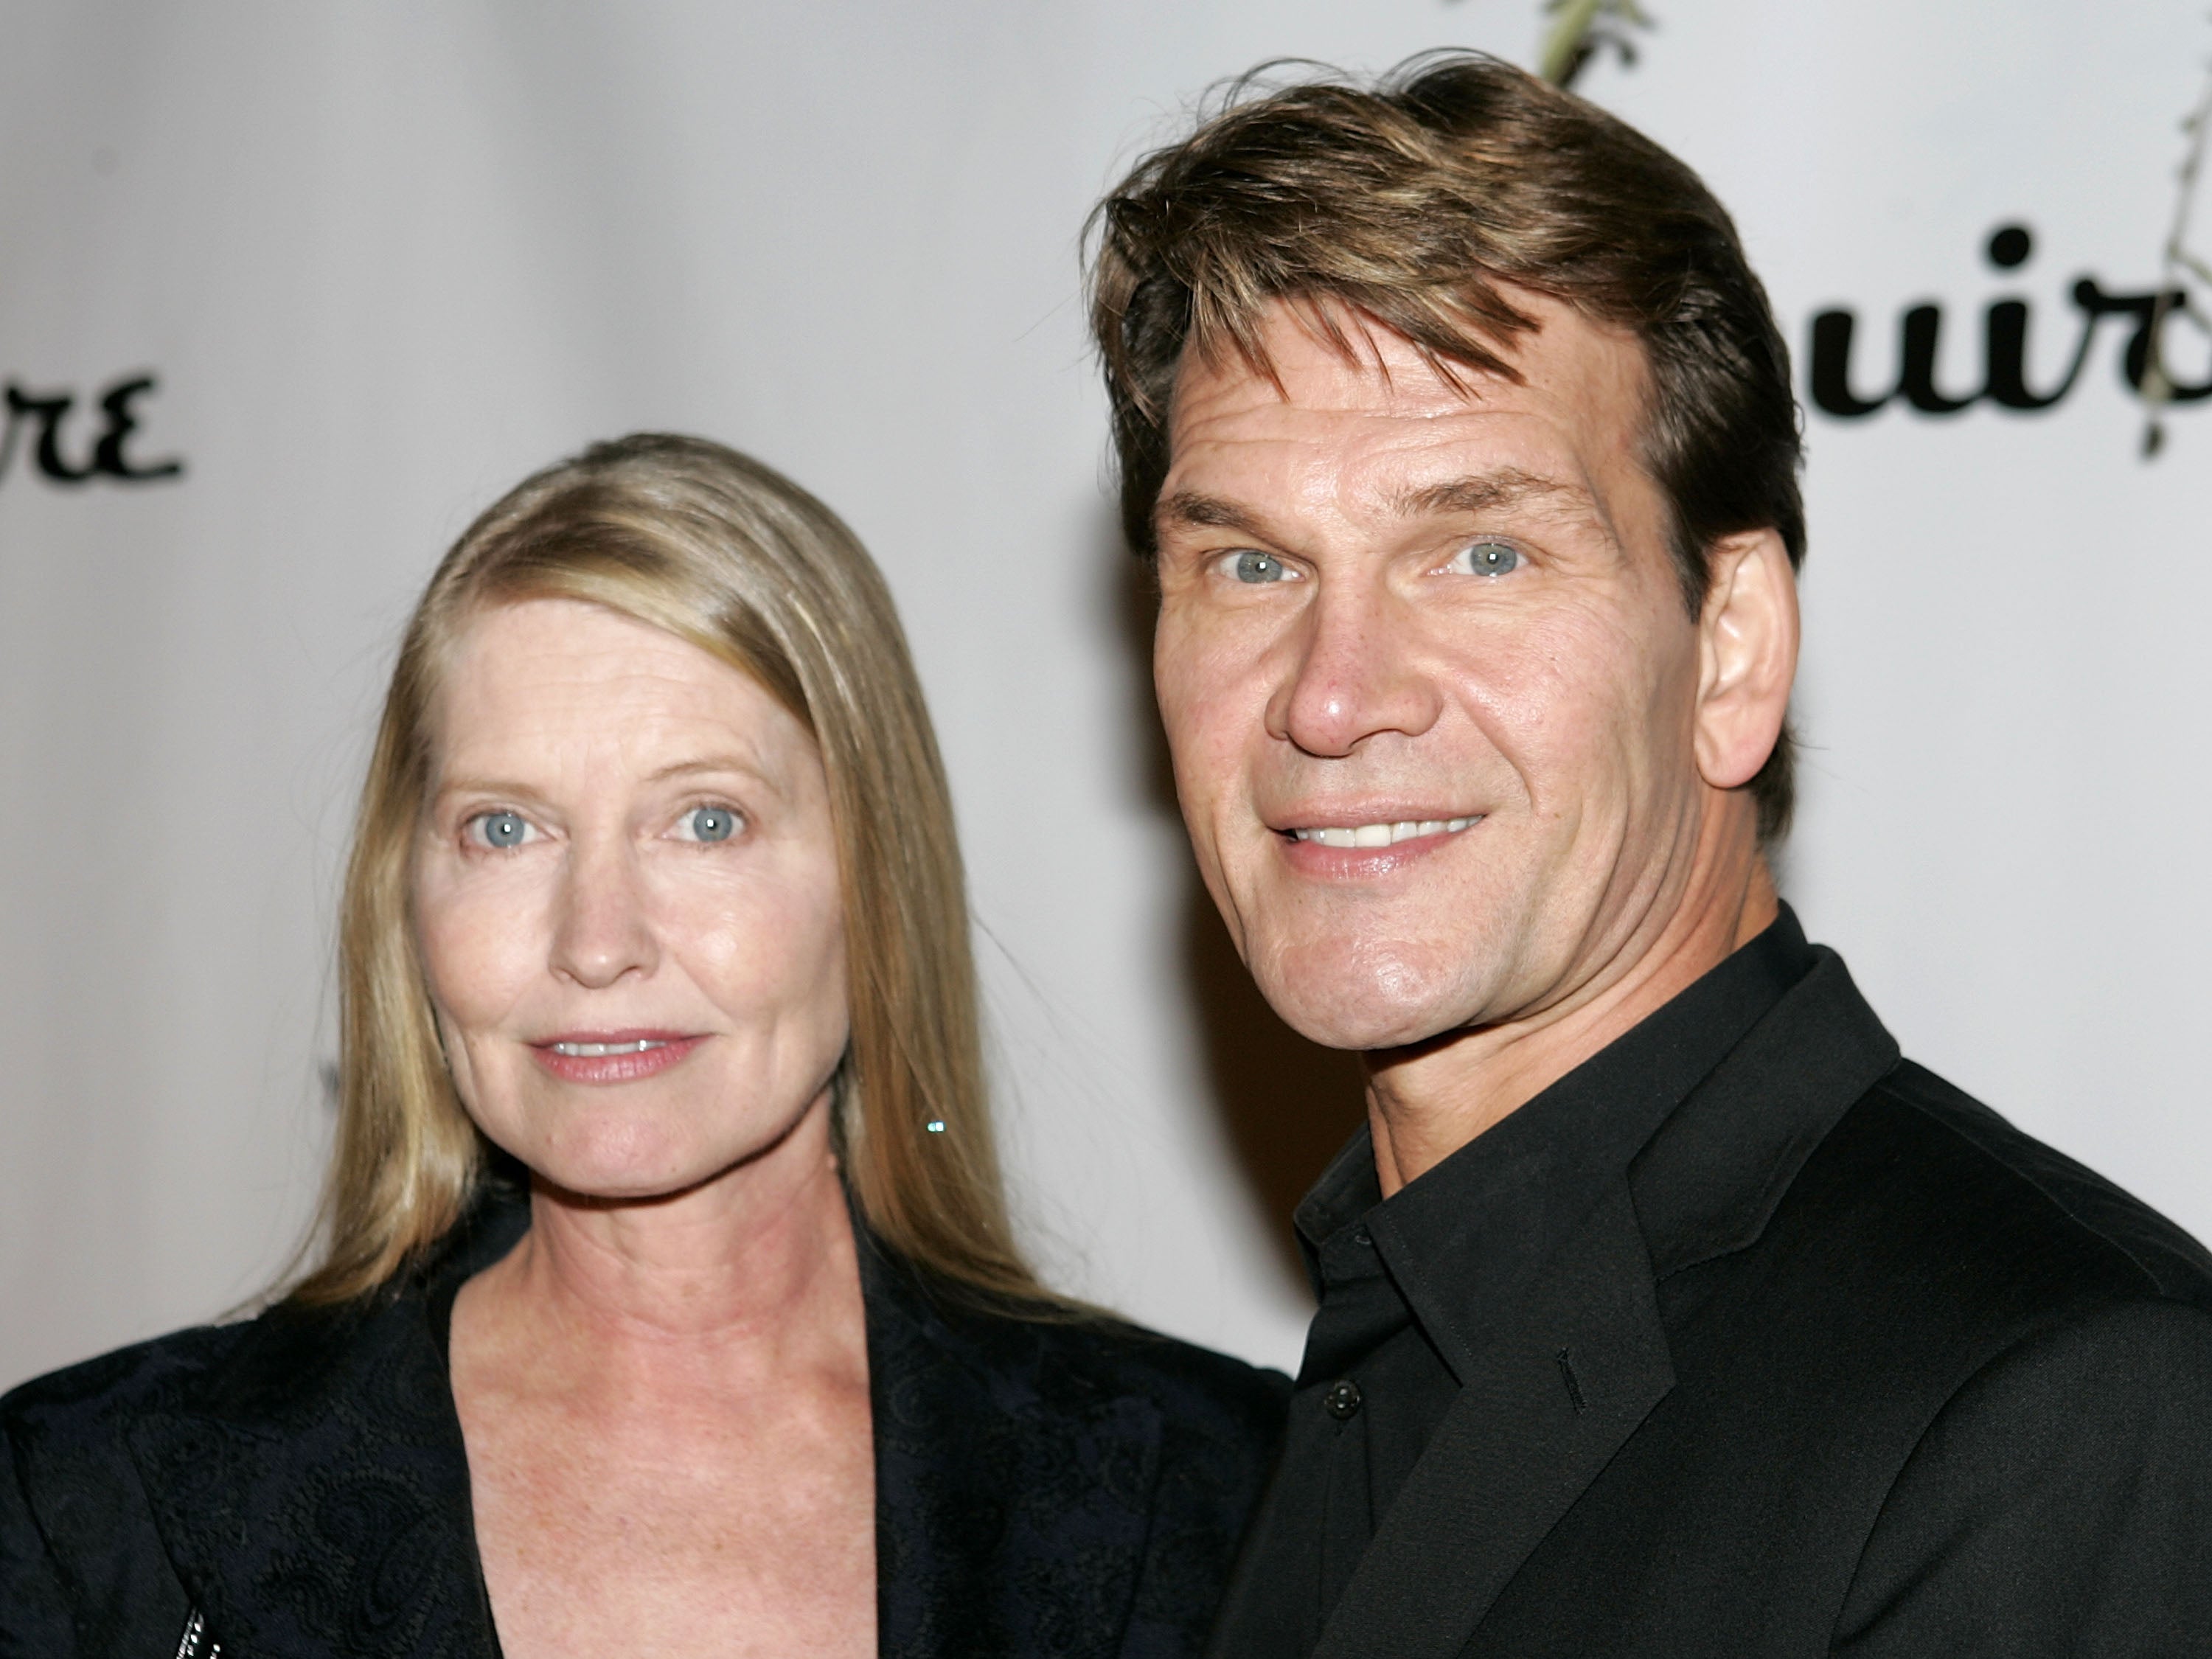 El actor Patrick Swayze (derecha) y su esposa Lisa Niemi en 2004